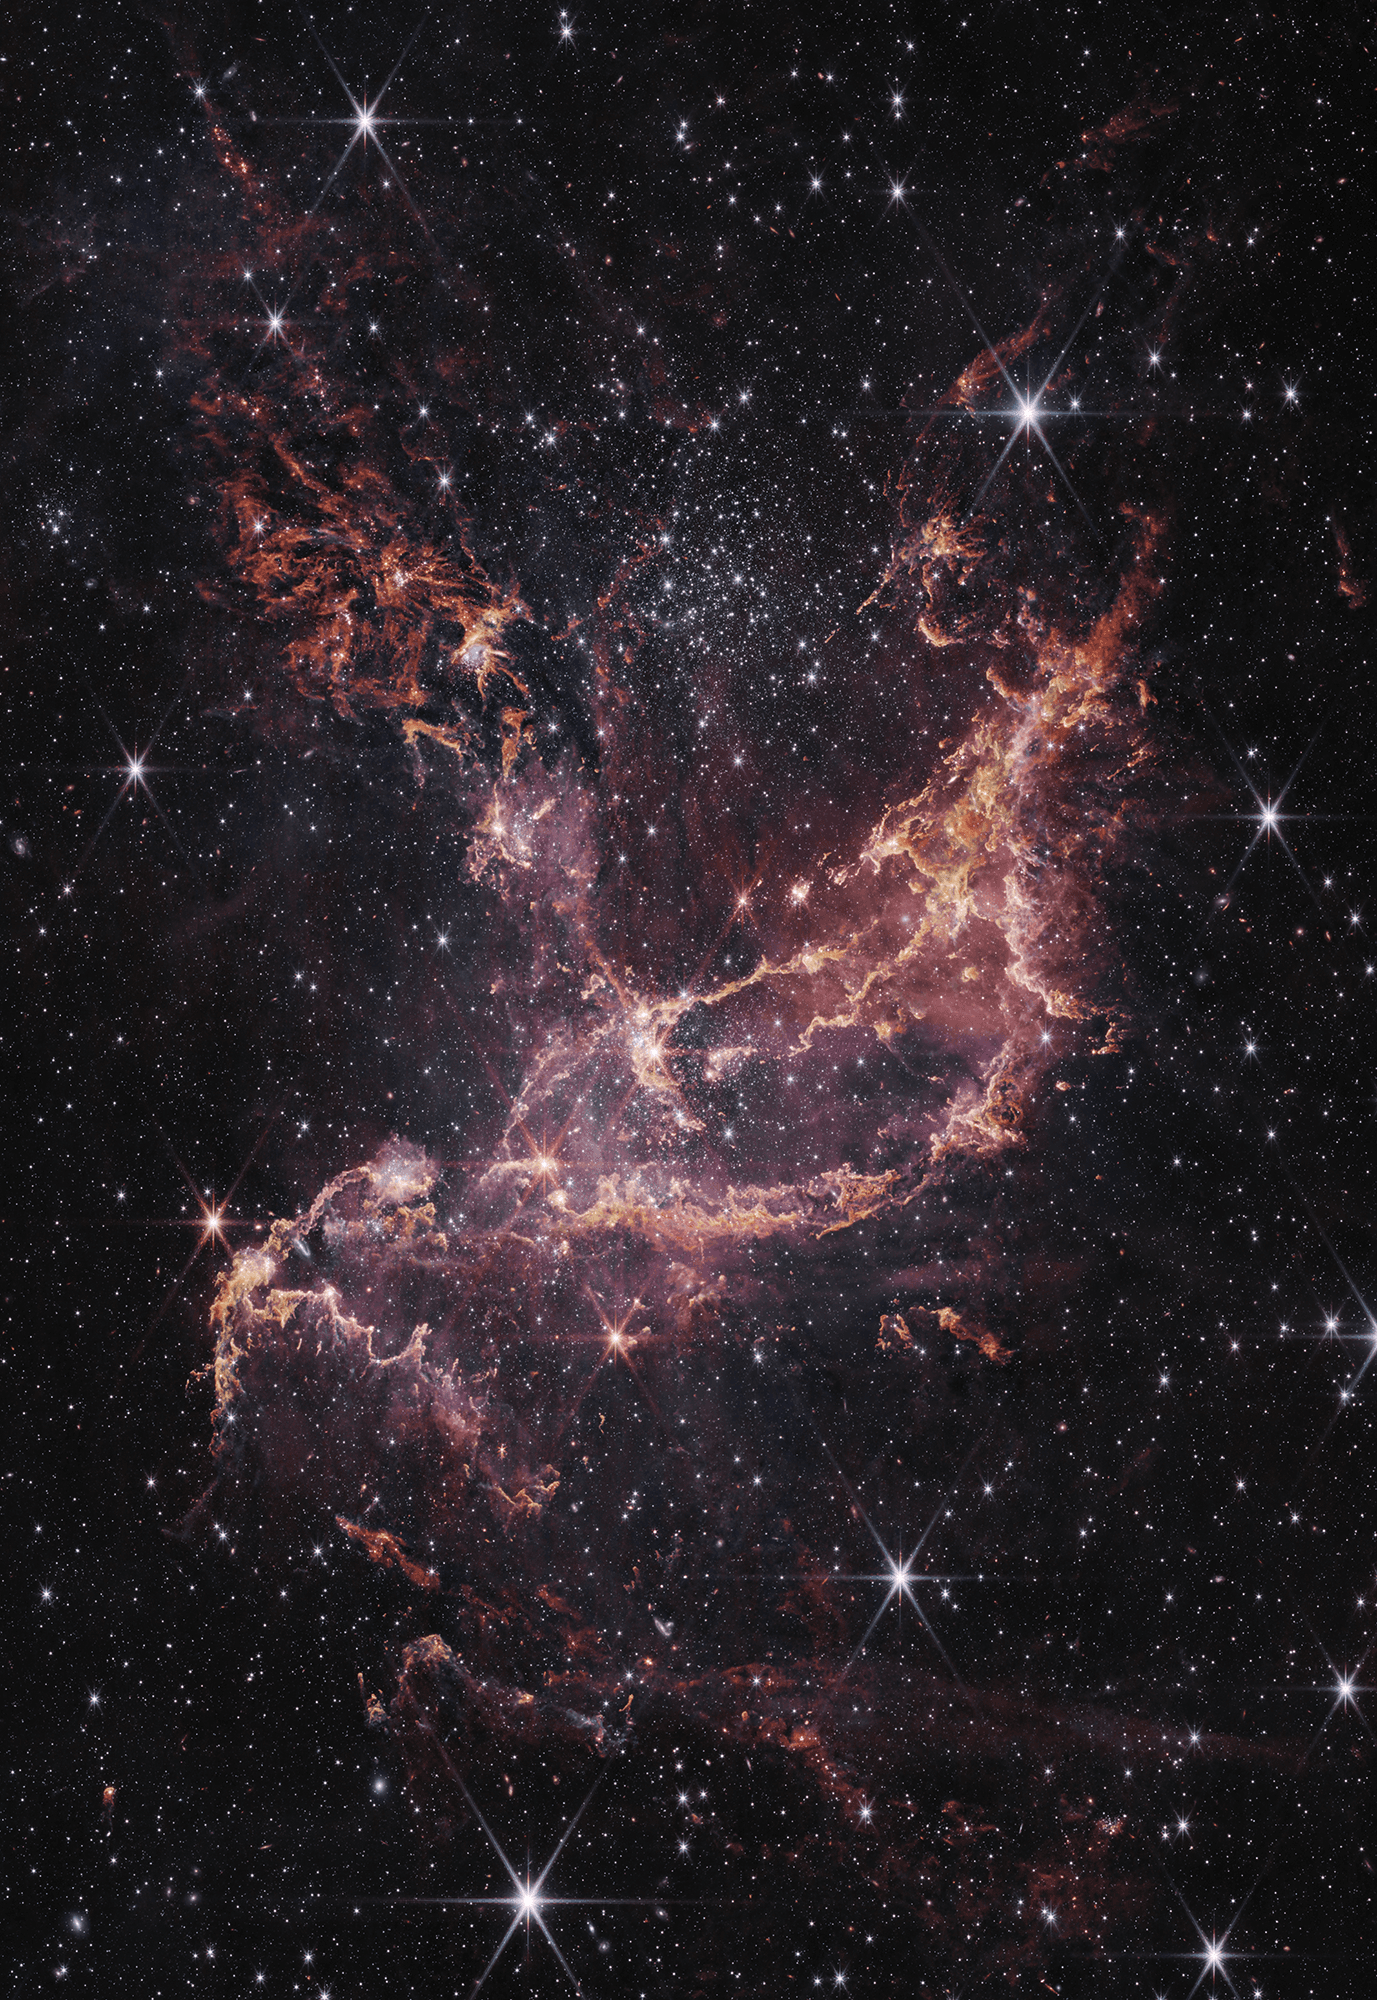 منطقة تشكّل النجوم الفتيّة الأكبر في سحابة ماجلّان الصُّغرى وفيها عنقود النجوم الفتيّ "إن‌جي‌سي 346"، ويظهر الانبعاث من الهيدروجين الذرّي المُتأيّن والهيدروجين الجُزيئي والغبار مُفَصَّلاً بتدرُّجاتٍ ورديّة وبرتقاليّة.